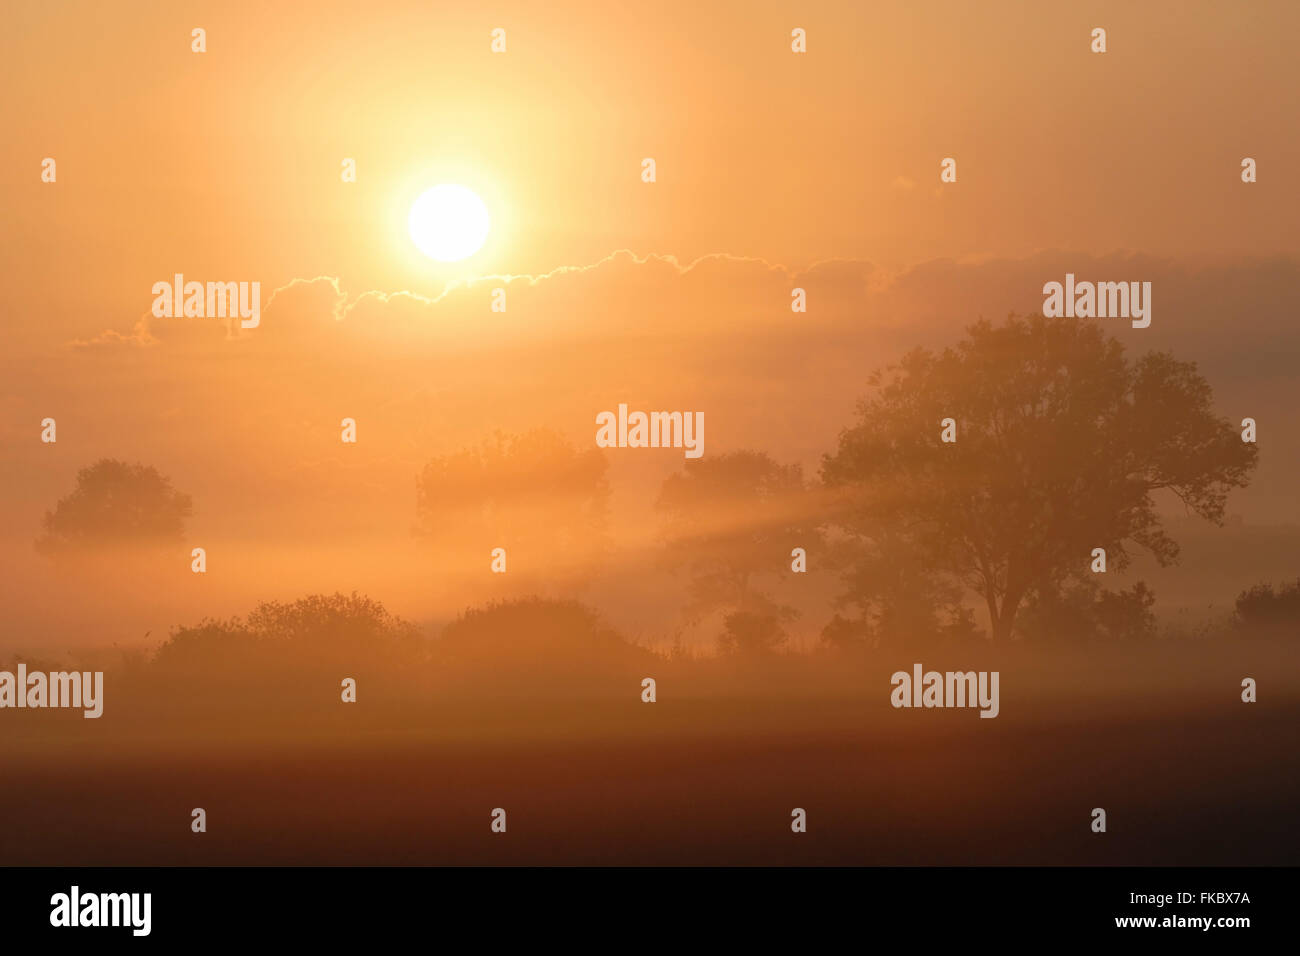 Sonnenaufgang über einem kultivierten Land, Landschaft und Felder mit Reihen von Bäumen und Sträuchern, Morgennebel, voller Atmosphäre. Stockfoto